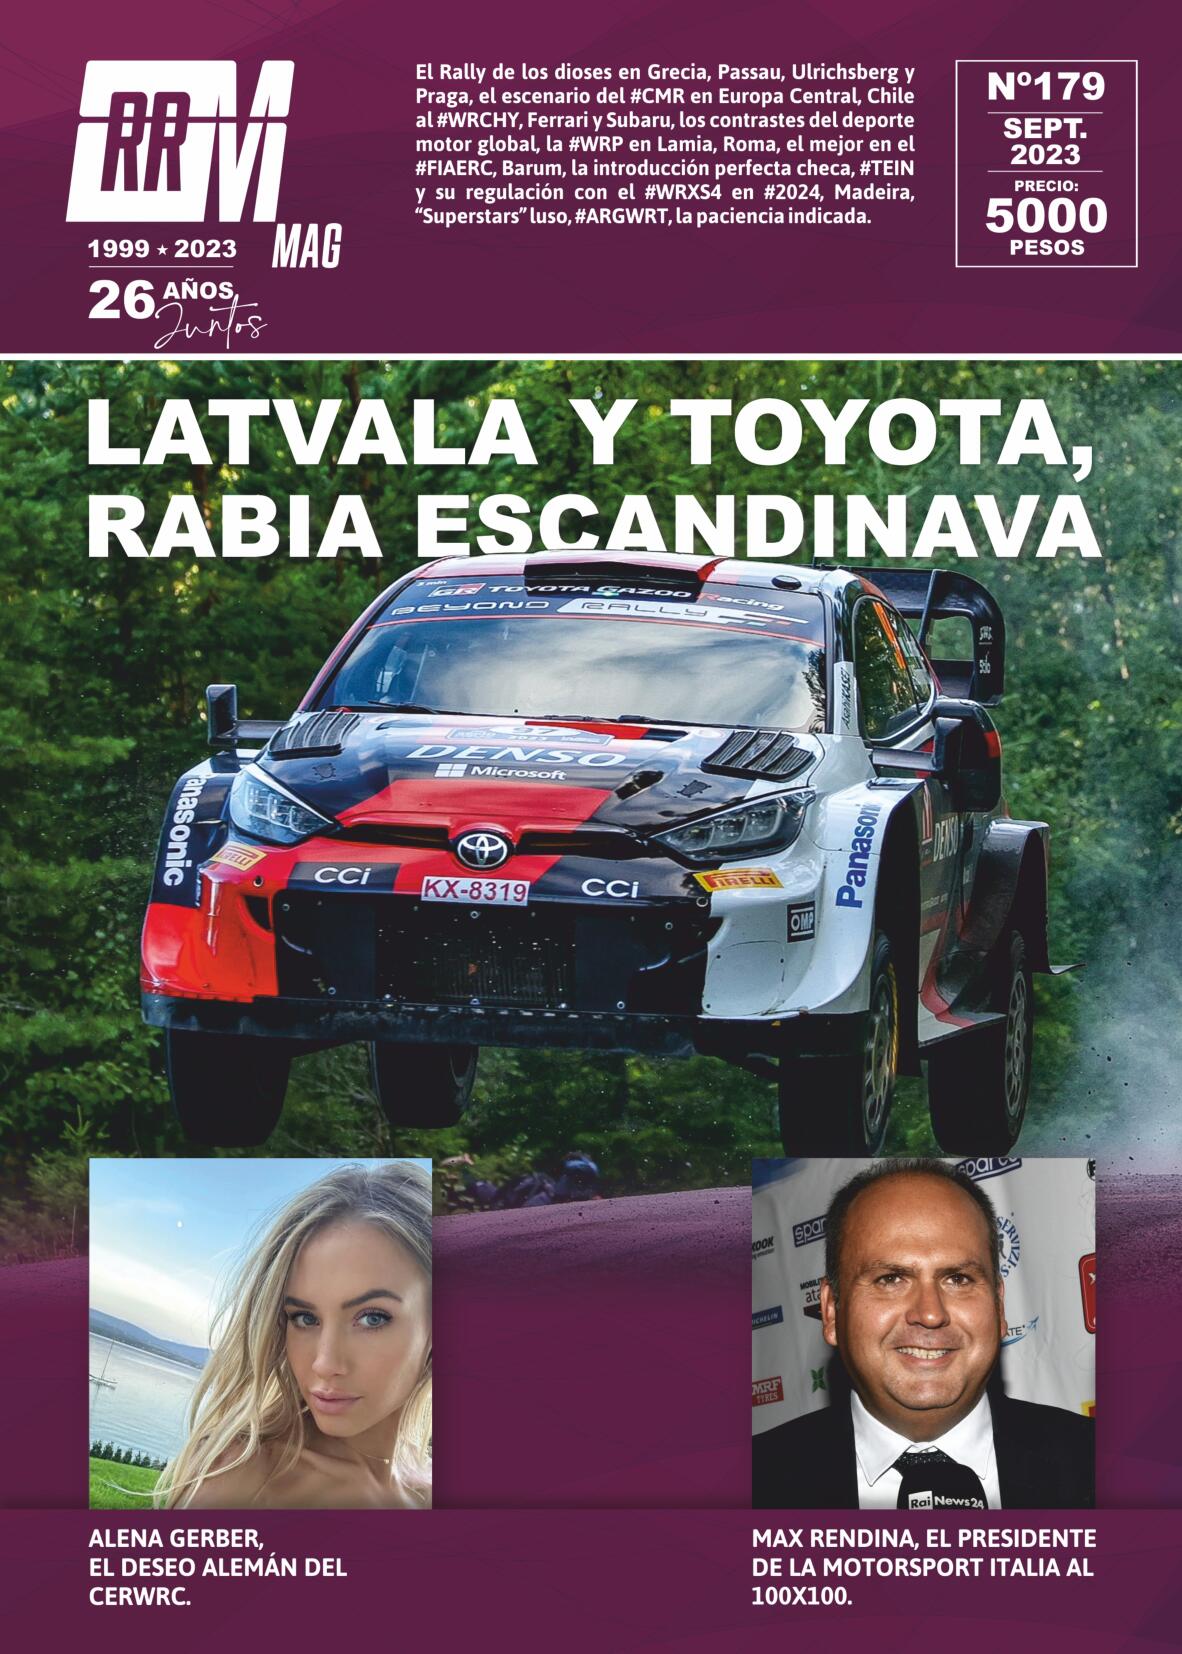 #RRMWRCMAG 179 RRM WRC MAG – Pablo MACHI 🇦🇷🌎 Mes de Septiembre #2023 Jari-Matti Latvala TOYOTA GAZOO Racing WRC 🇫🇮🌎